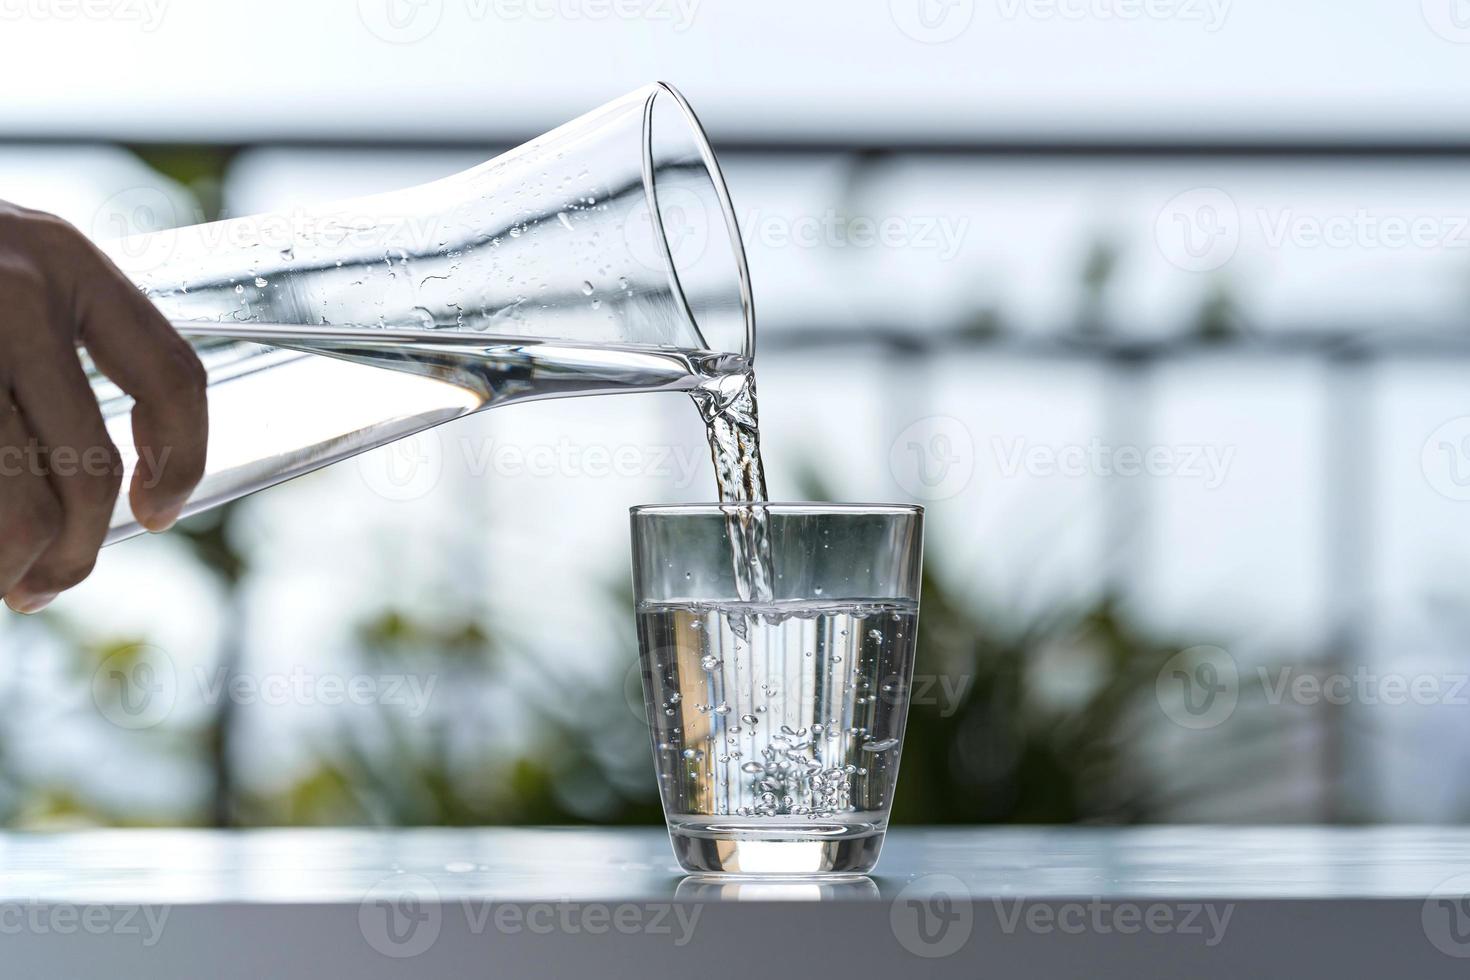 Verter agua potable de botella en vaso en casa de jardín foto